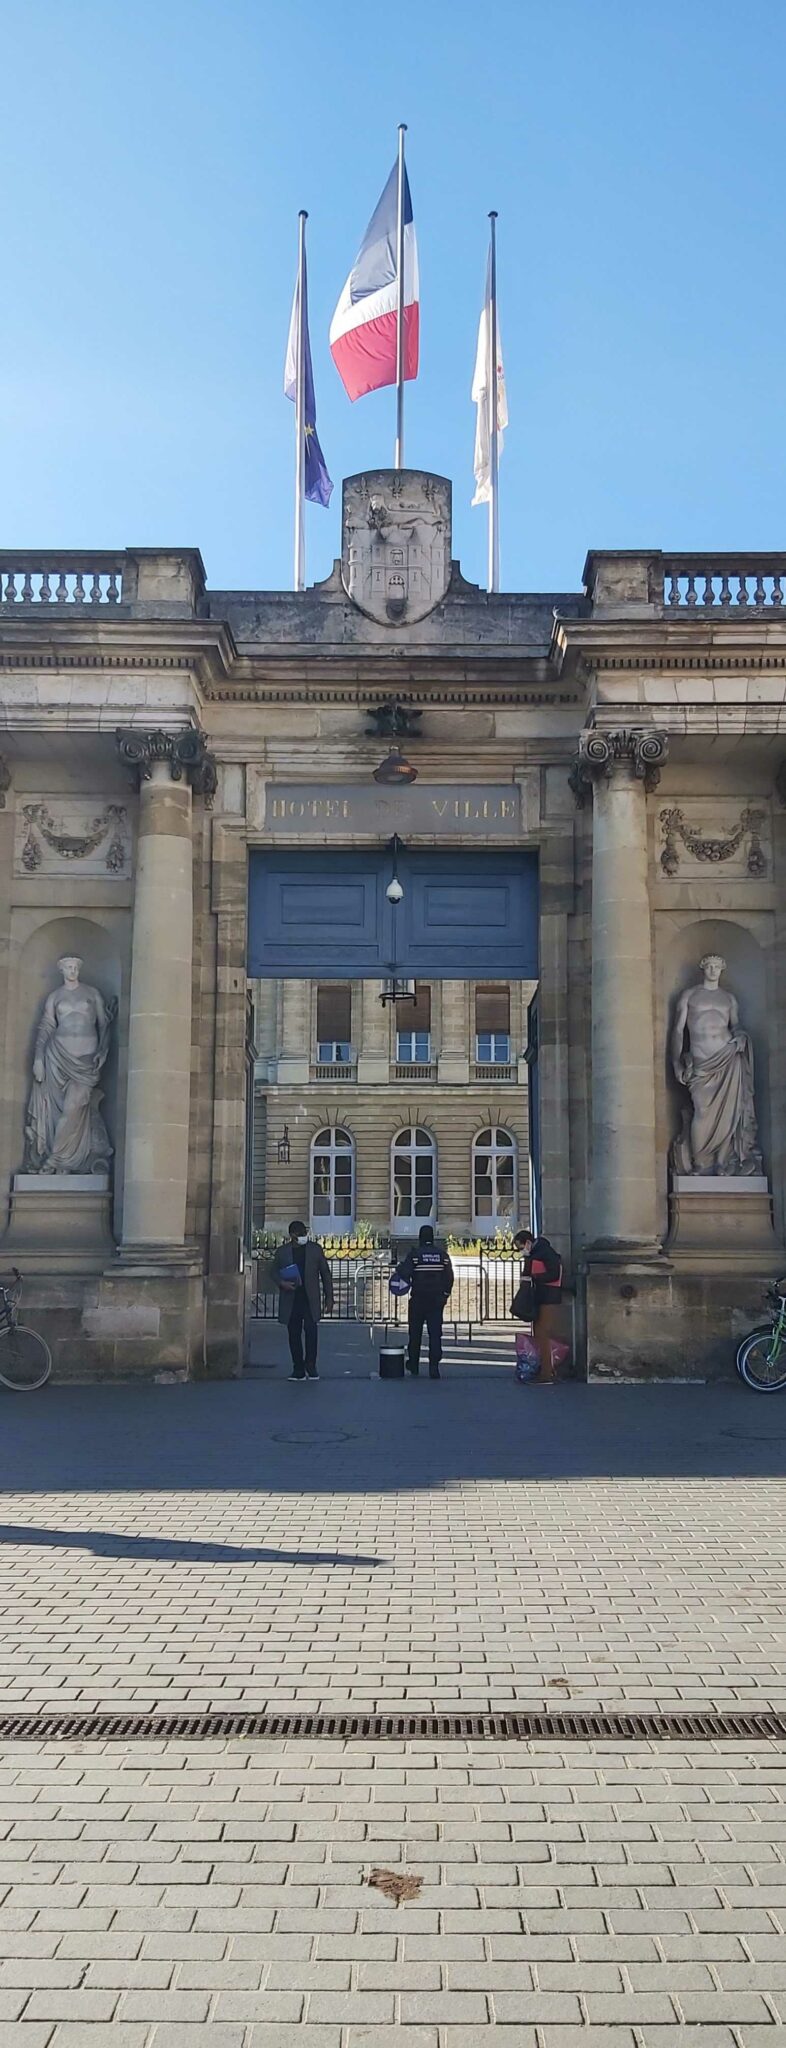 L’Hôtel de ville de Bordeaux, place Pey Berland, est surplombé de trois drapeaux : celui de l’Union européenne, de la République française et de la région Nouvelle Aquitaine.